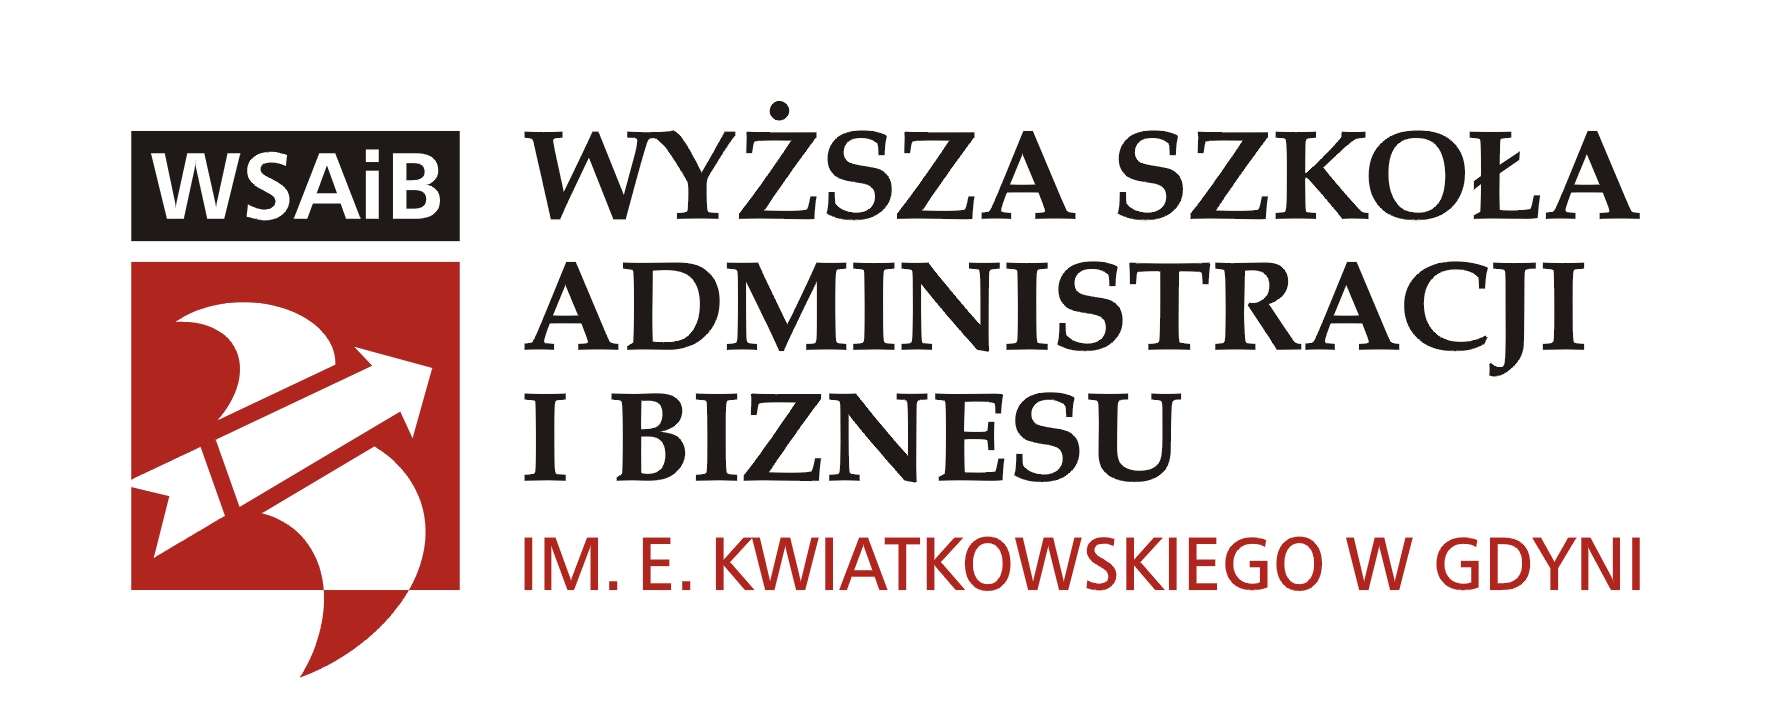 Dzień Otwarty w Wyższej Szkole Administracji i Biznesu w Gdyni